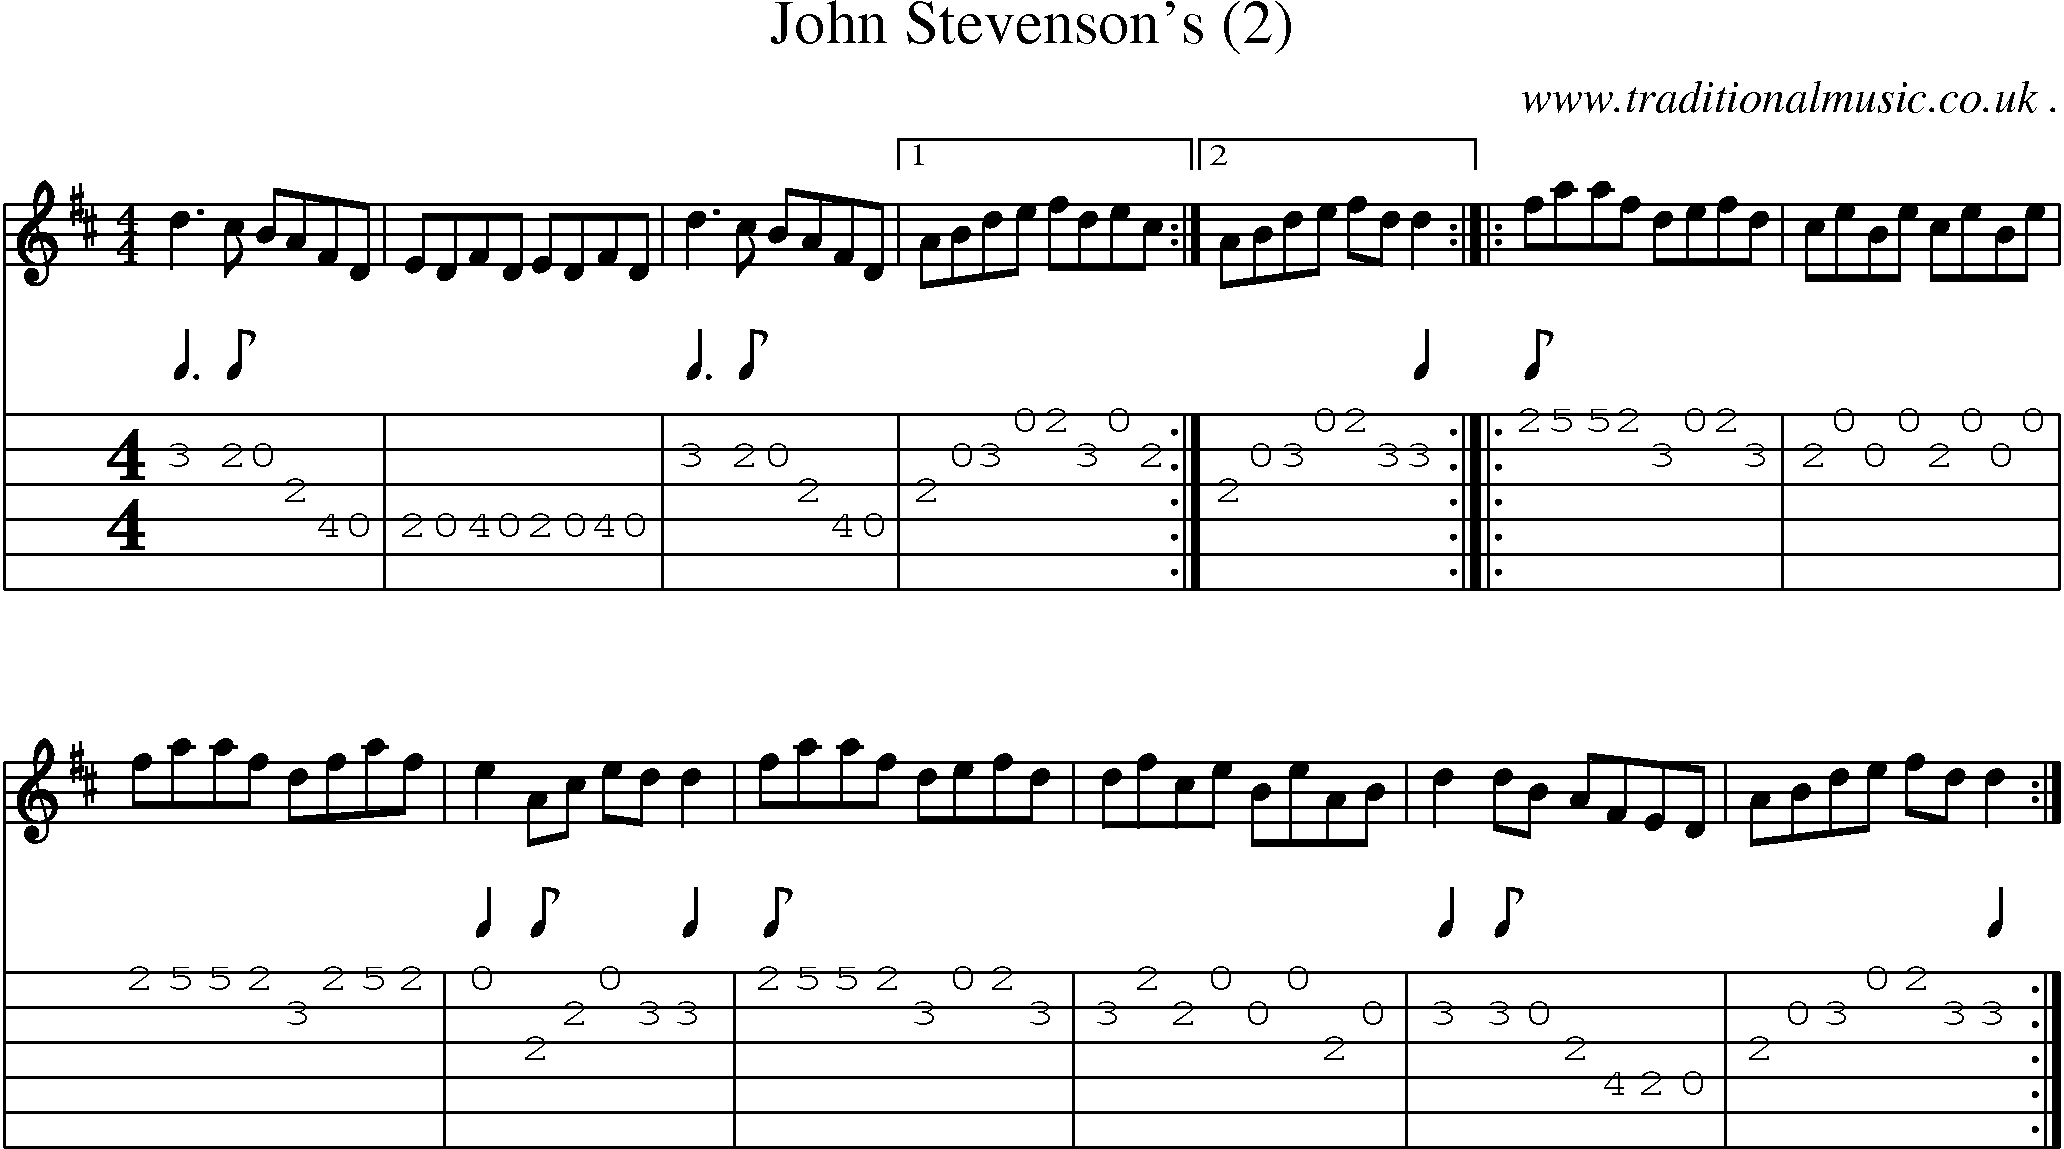 Sheet-Music and Guitar Tabs for John Stevensons (2)